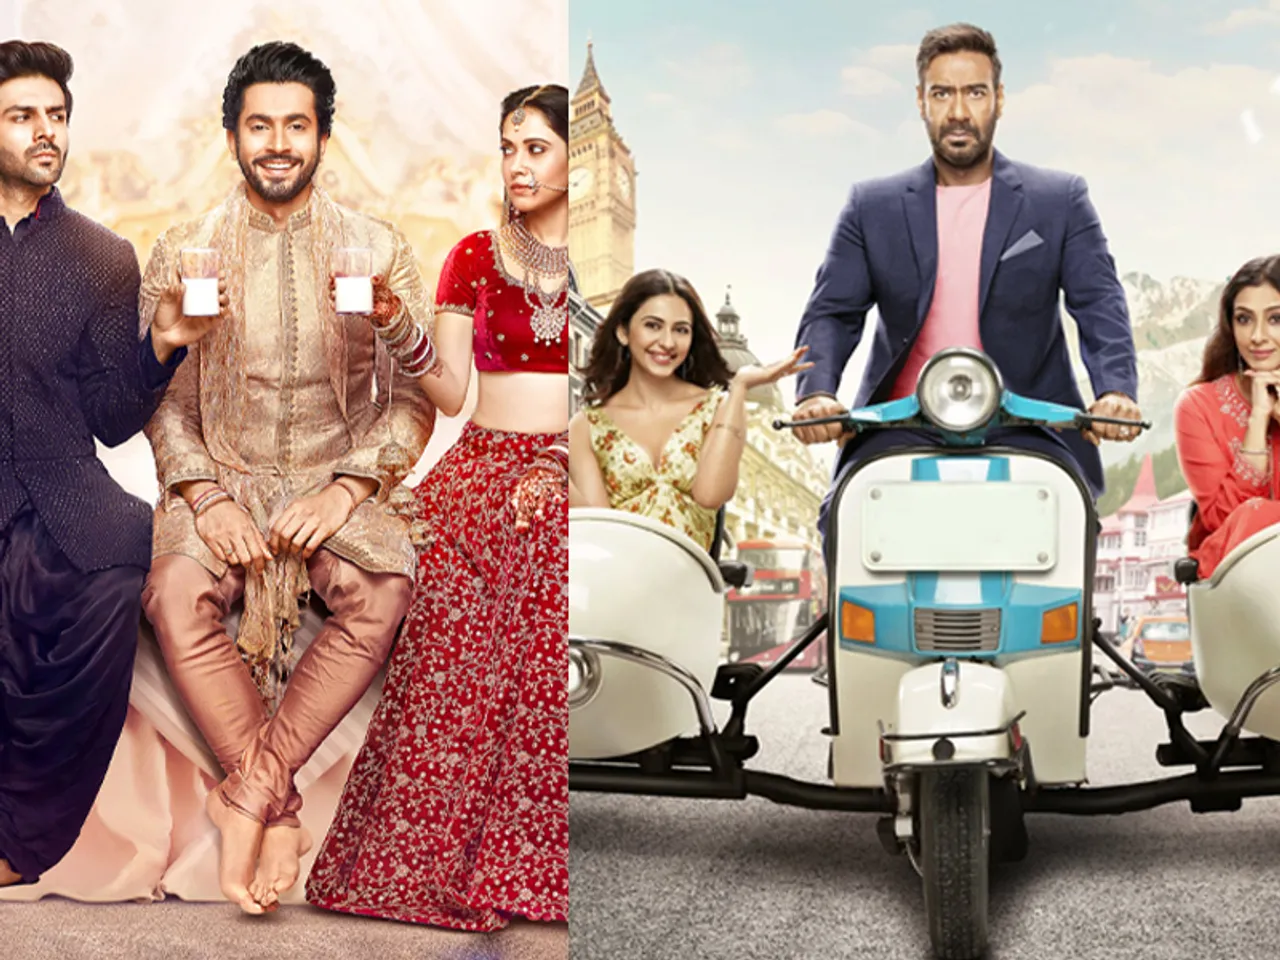 कार्तिक आर्यन की 'सोनू के टीटू की स्वीटी' और अजय देवगन की 'दे दे प्यार दे' फिल्म का बनेगा सीक्वल